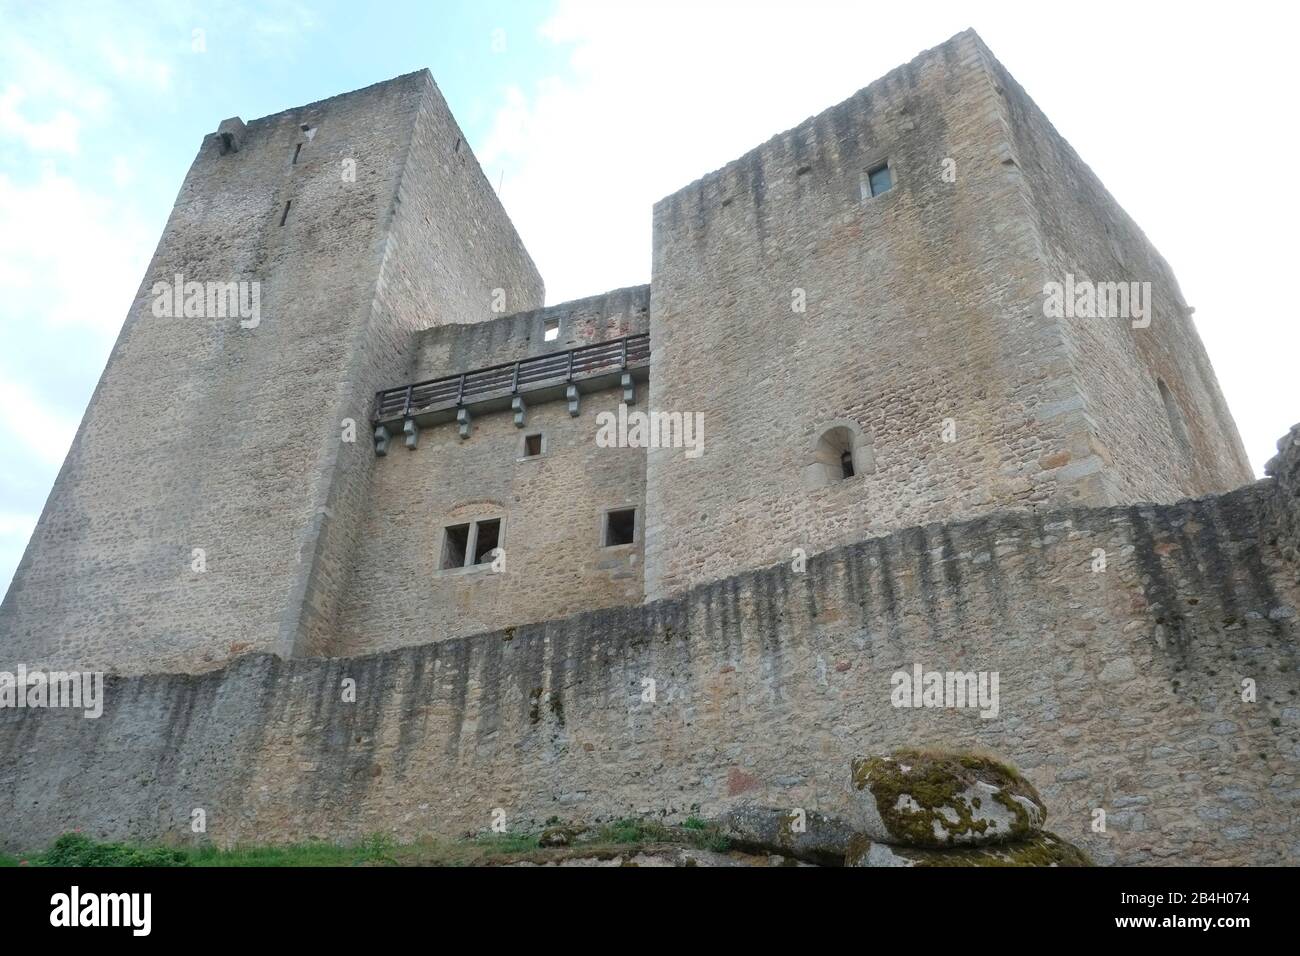 Château de Landstejn, République tchèque, le Château a été construit au début du XIIIe siècle probablement par la première morave comme point de soutien pour le territoire de la Bohême, de la Moravie et de l'Autriche. Banque D'Images